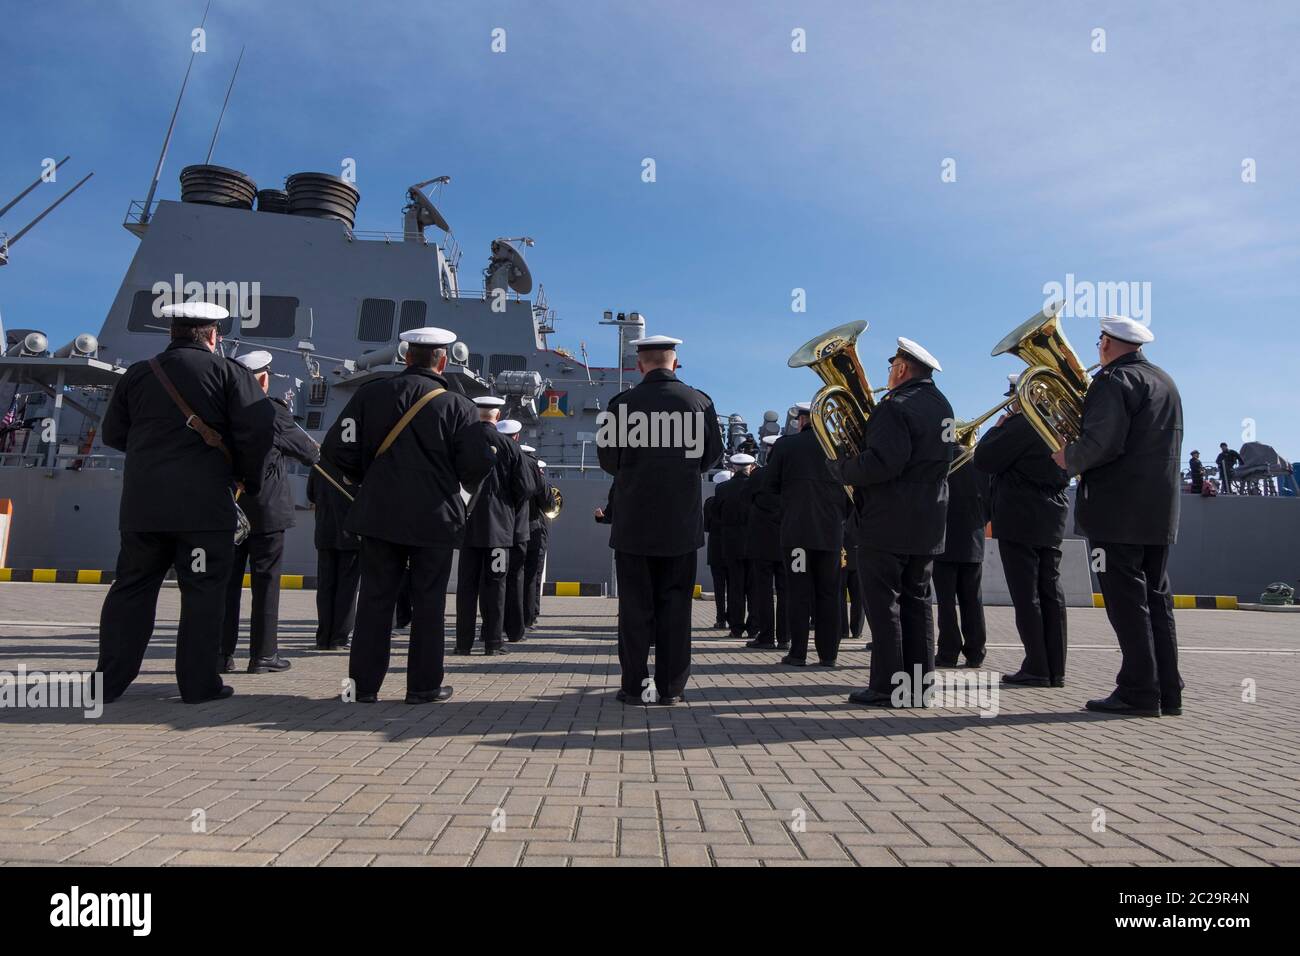 Un groupe local accueille l'USS Navy Donald Cook pour une visite en bateau. À Klaipėda, Lituanie. Banque D'Images